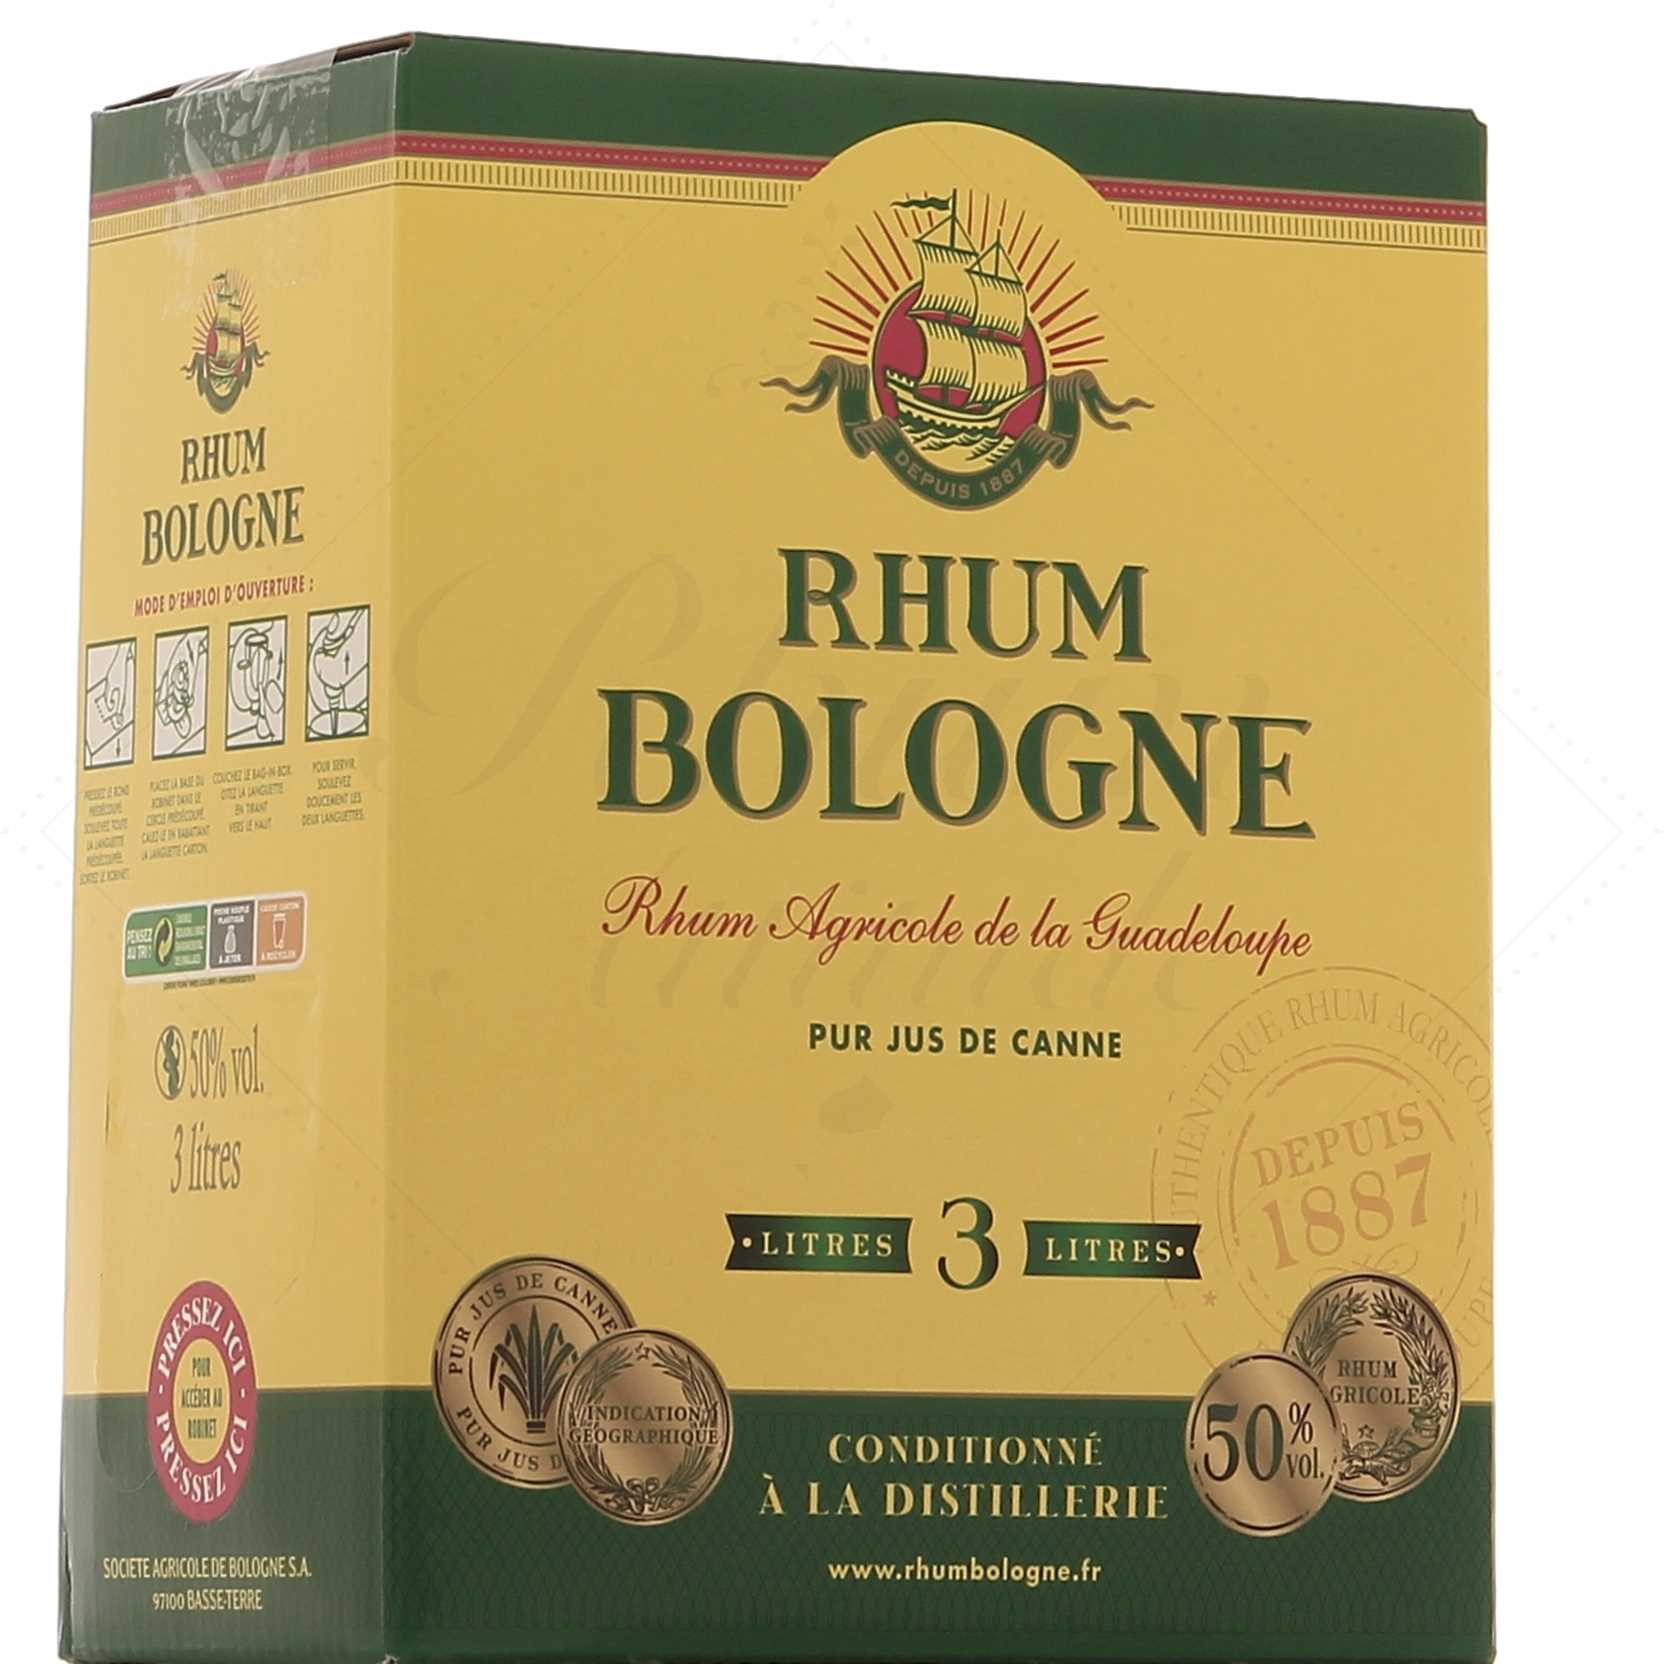 Fajou Rhum Blanc Traditionnel 50° Cubi 3L